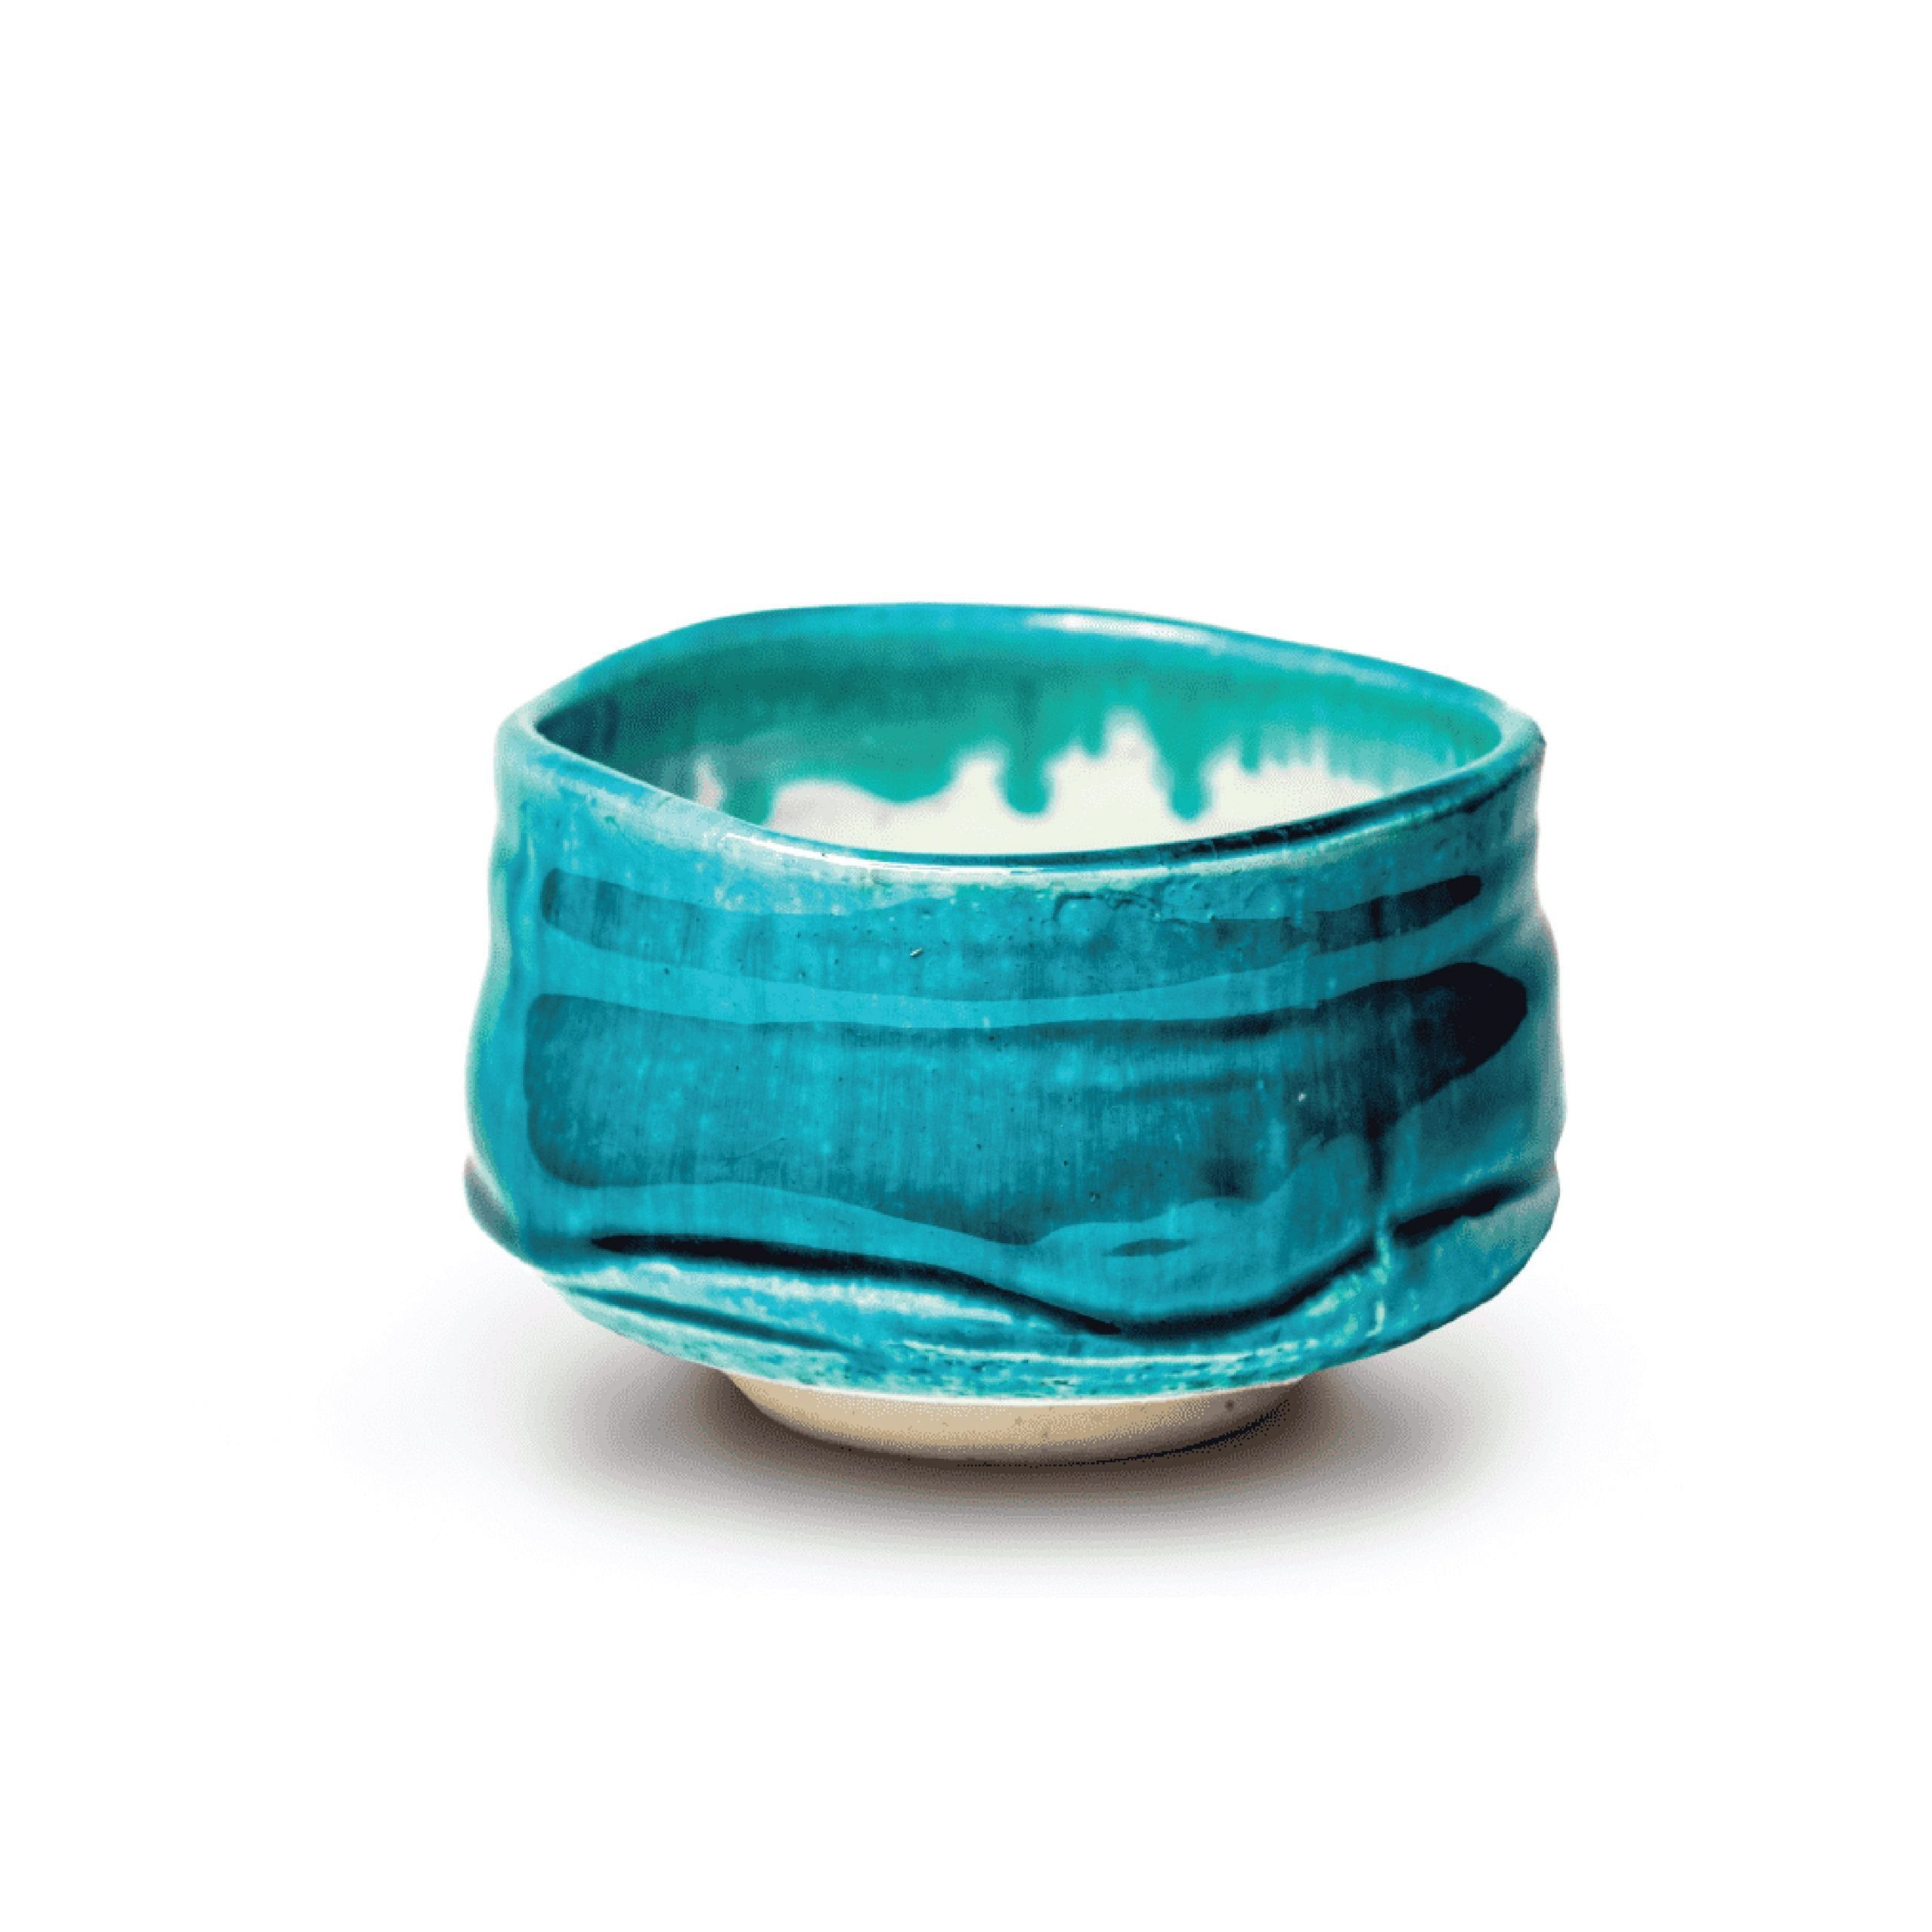 Japanese handmade ceramic bowl “KUSUNOKI”